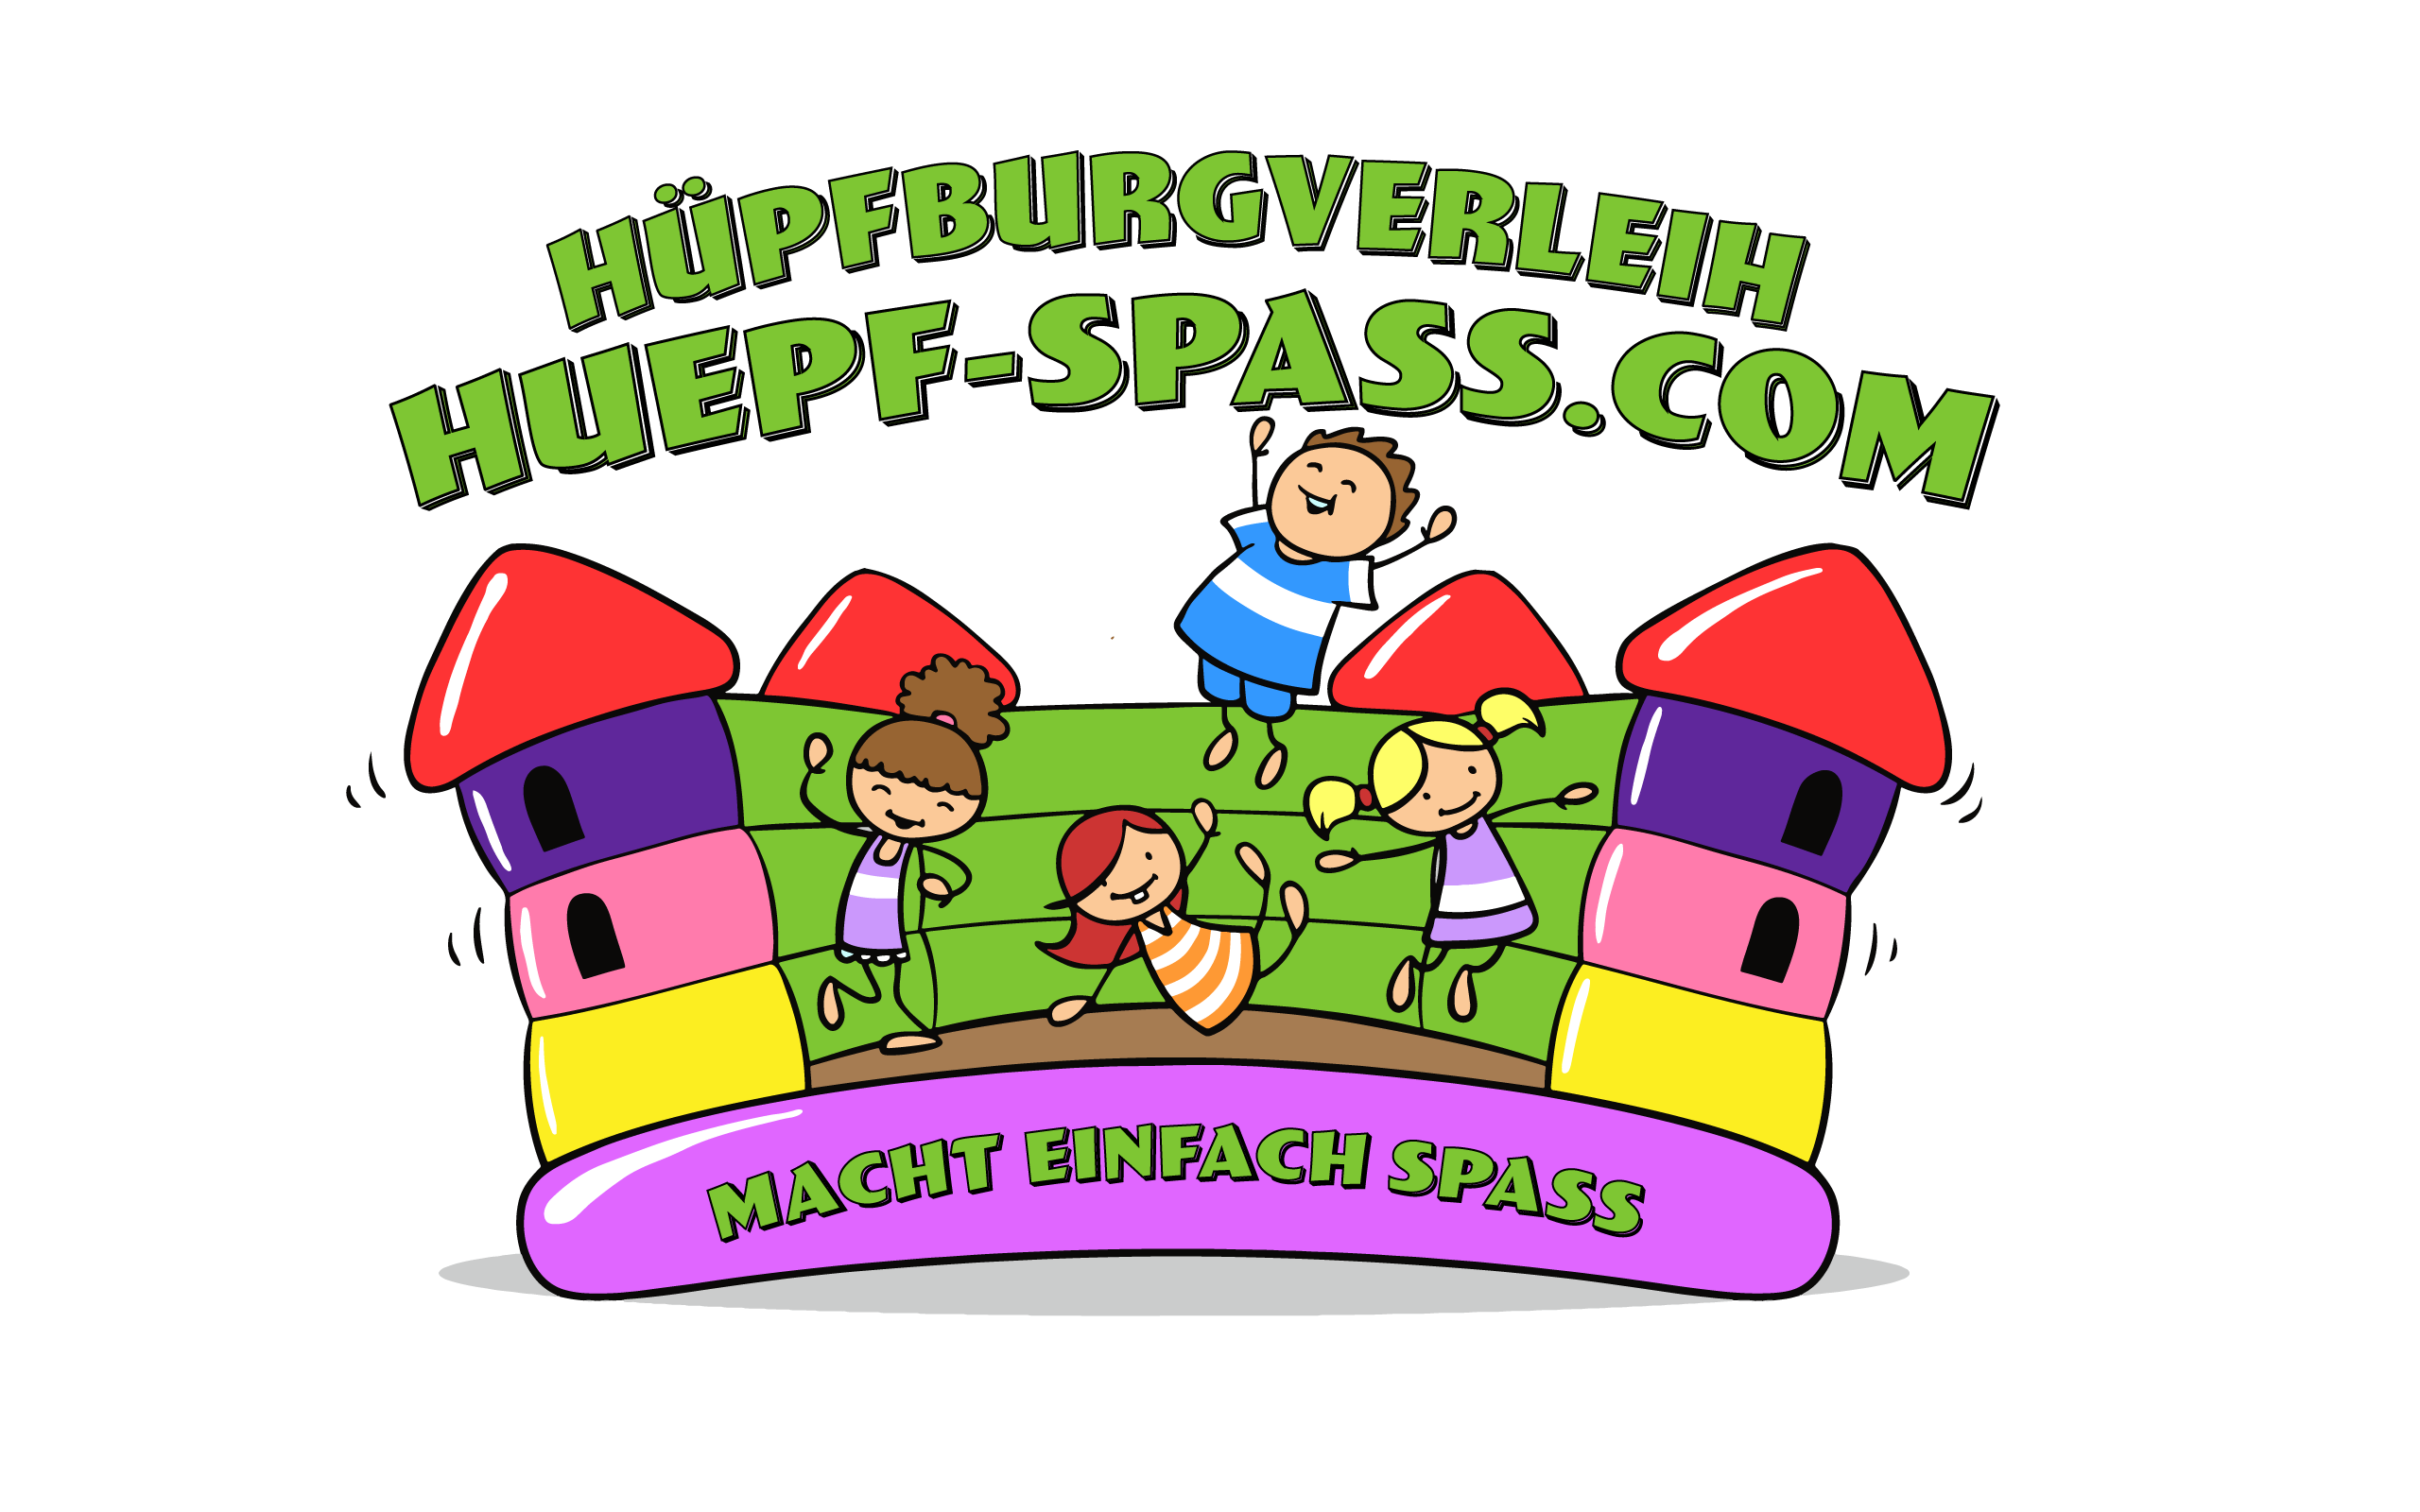 (c) Huepf-spass.com